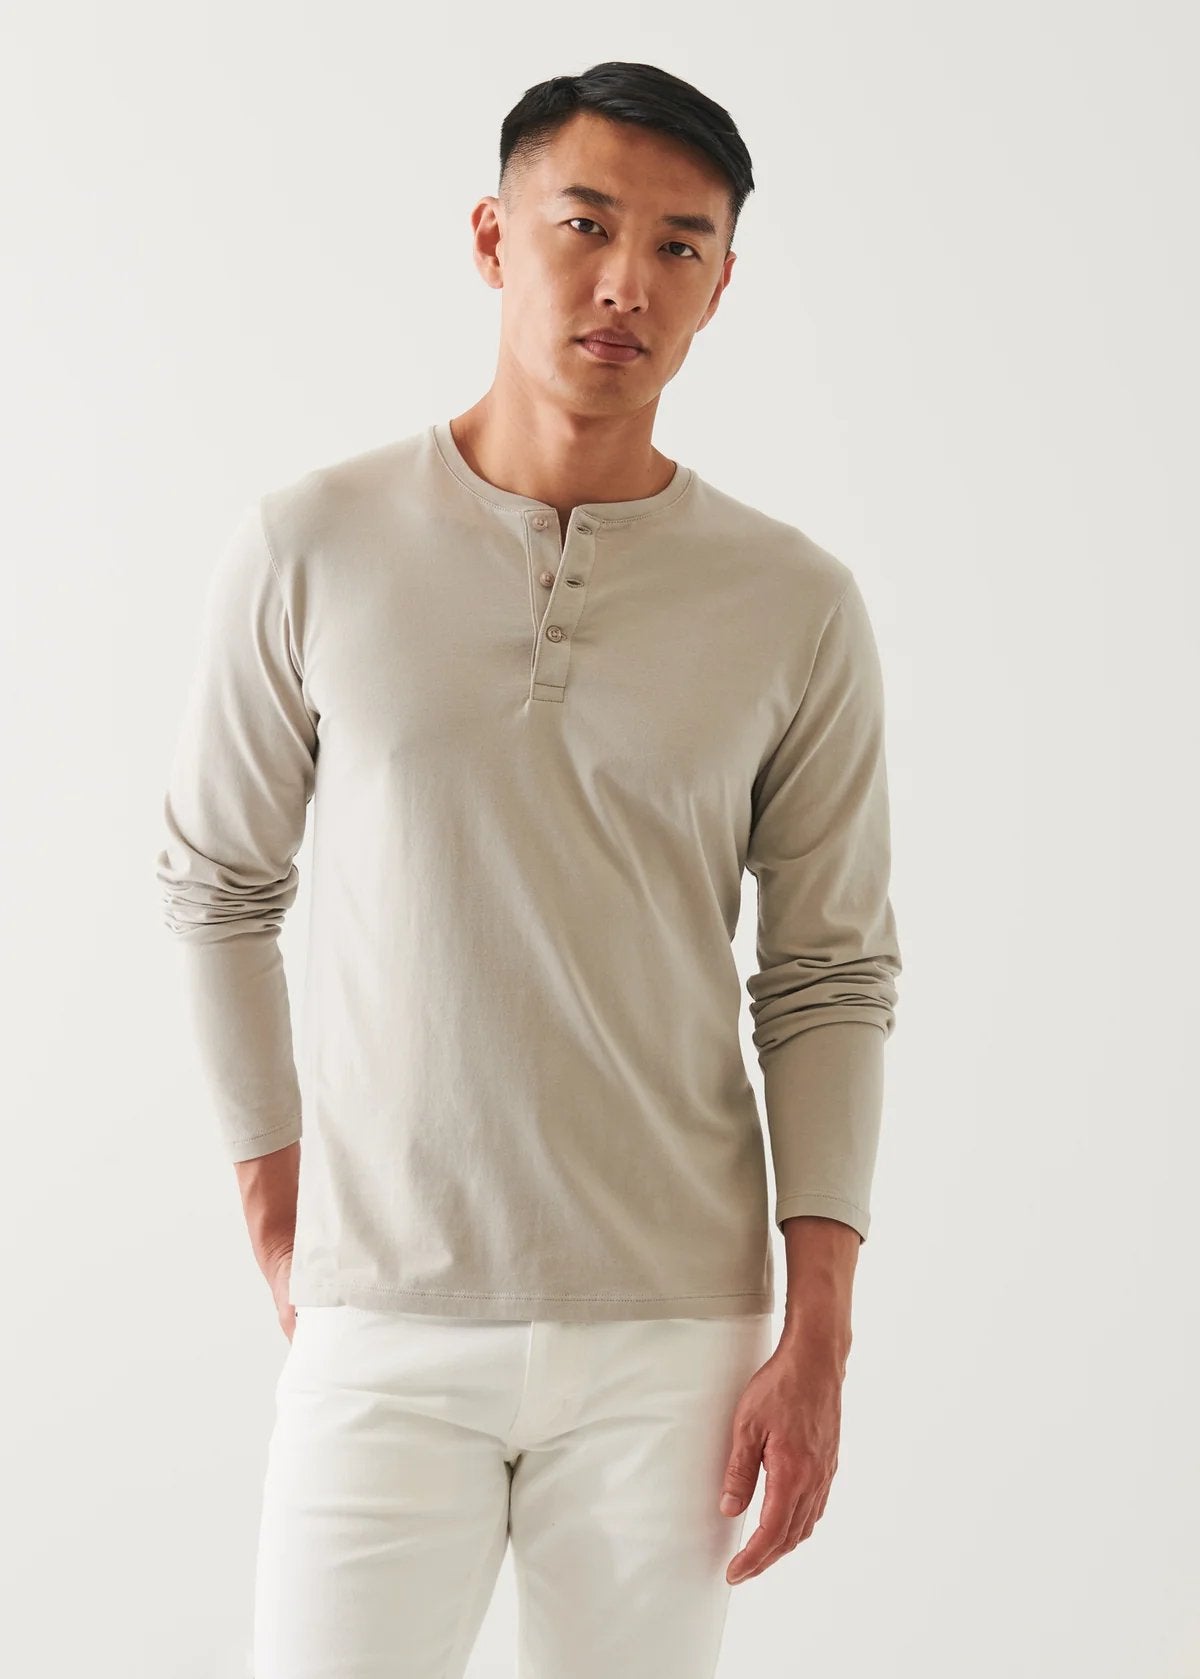 Long Sleeve Henley T-Shirt - Patrick Assaraf - Danali - 99A08HL-Aluminum-M